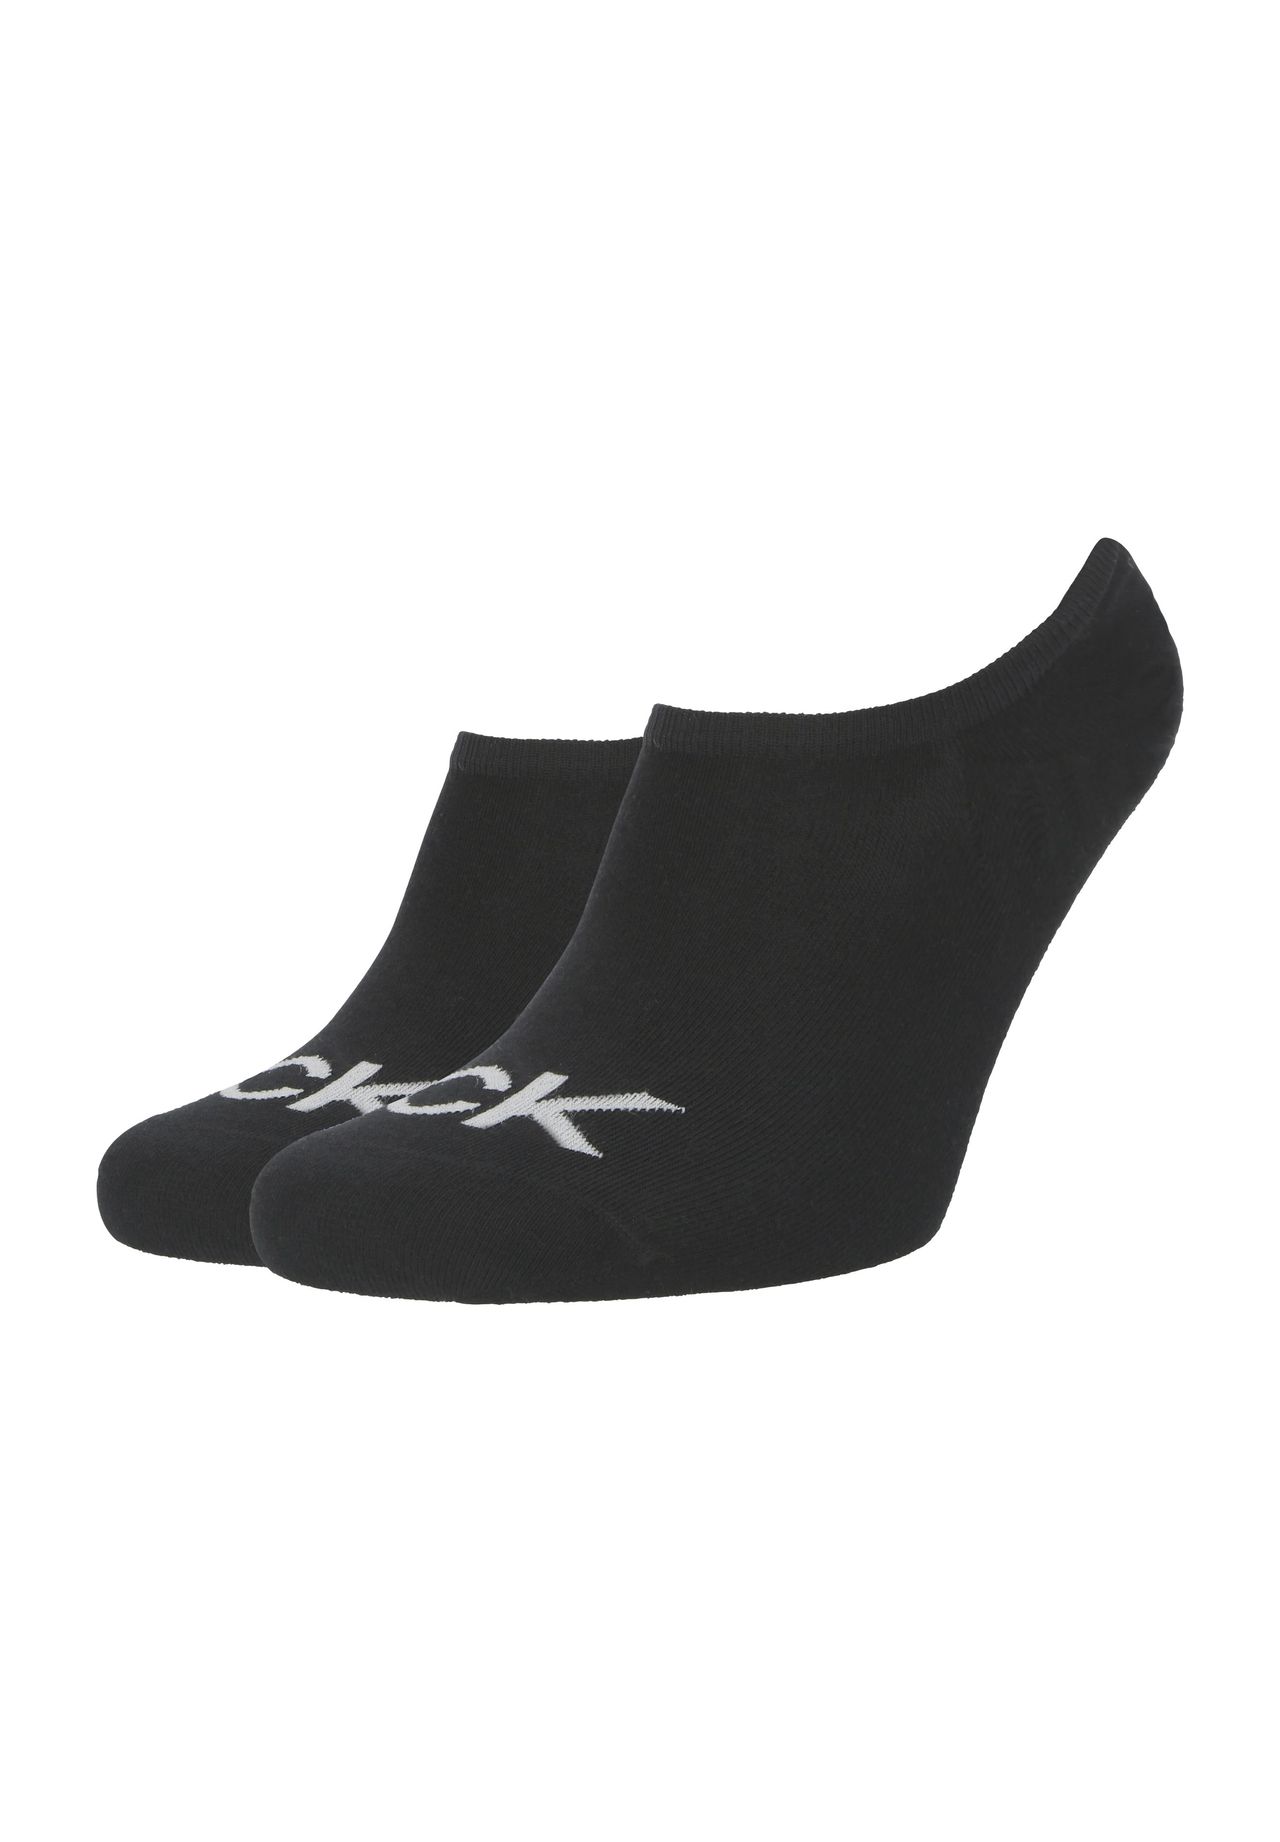 Schuhe Schwarz 43 kaufen | GALERIA